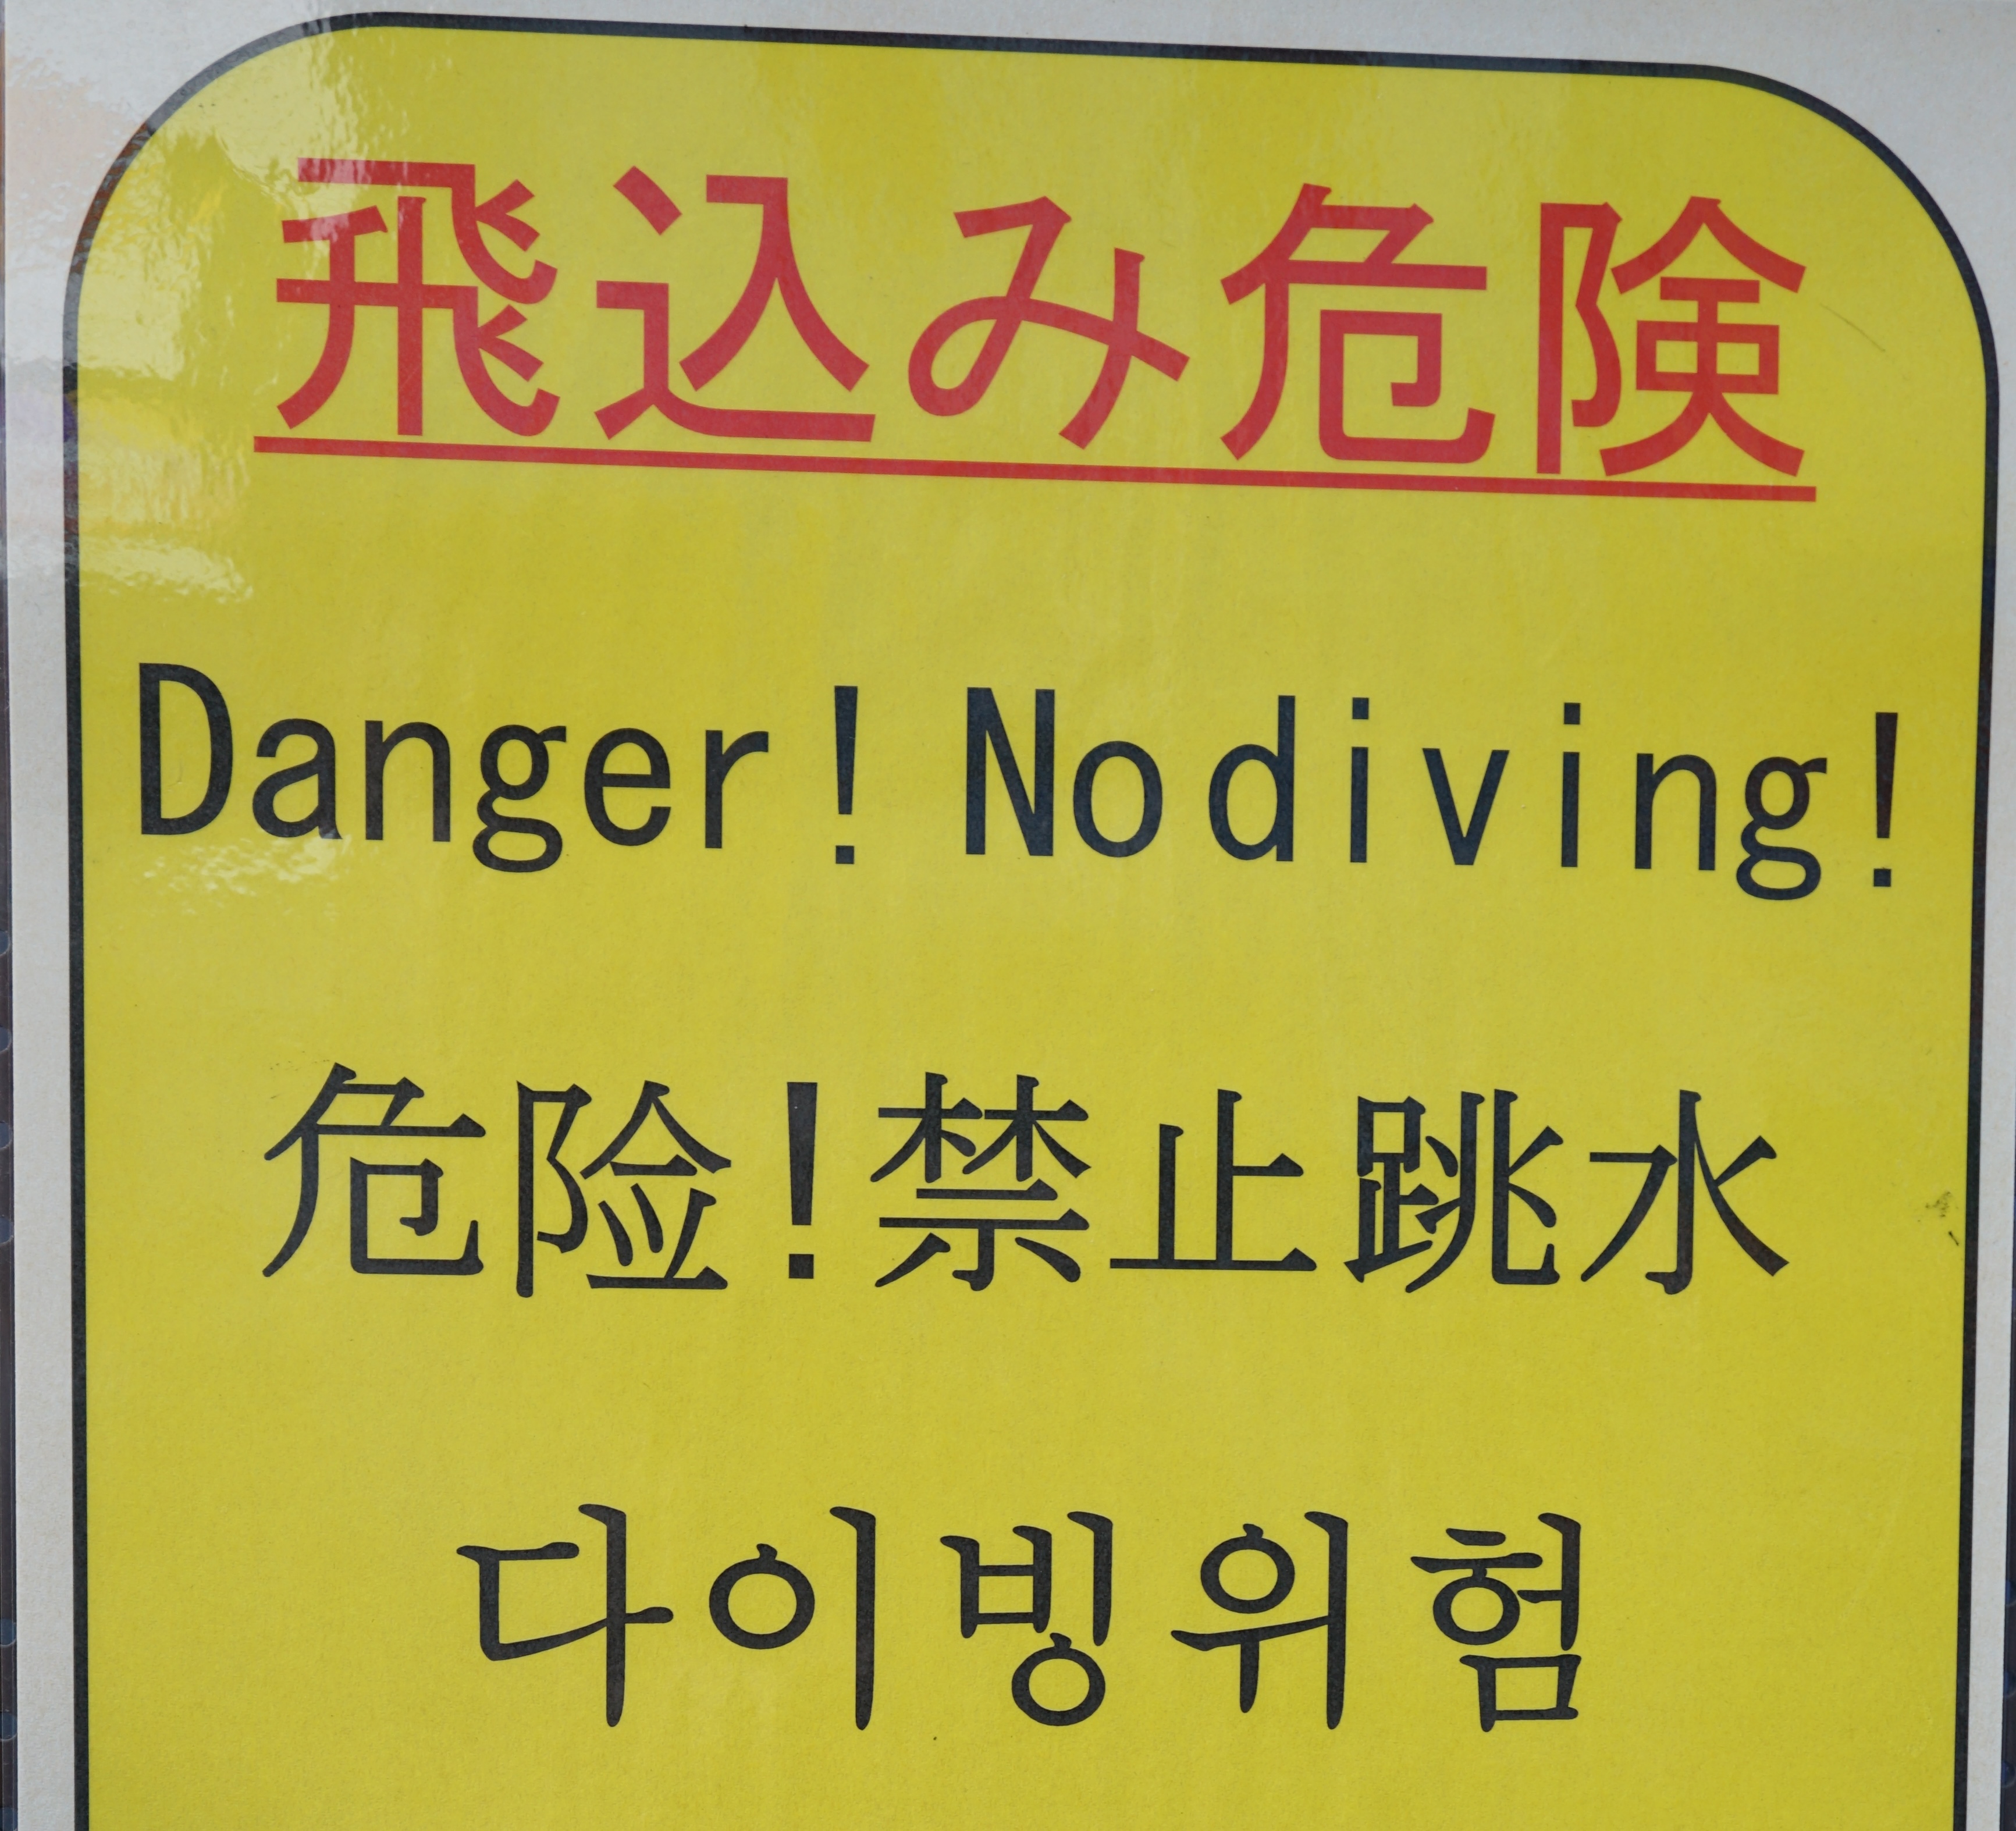 Gelbes Warnschild auf dem "Danger! No diving!" steht.